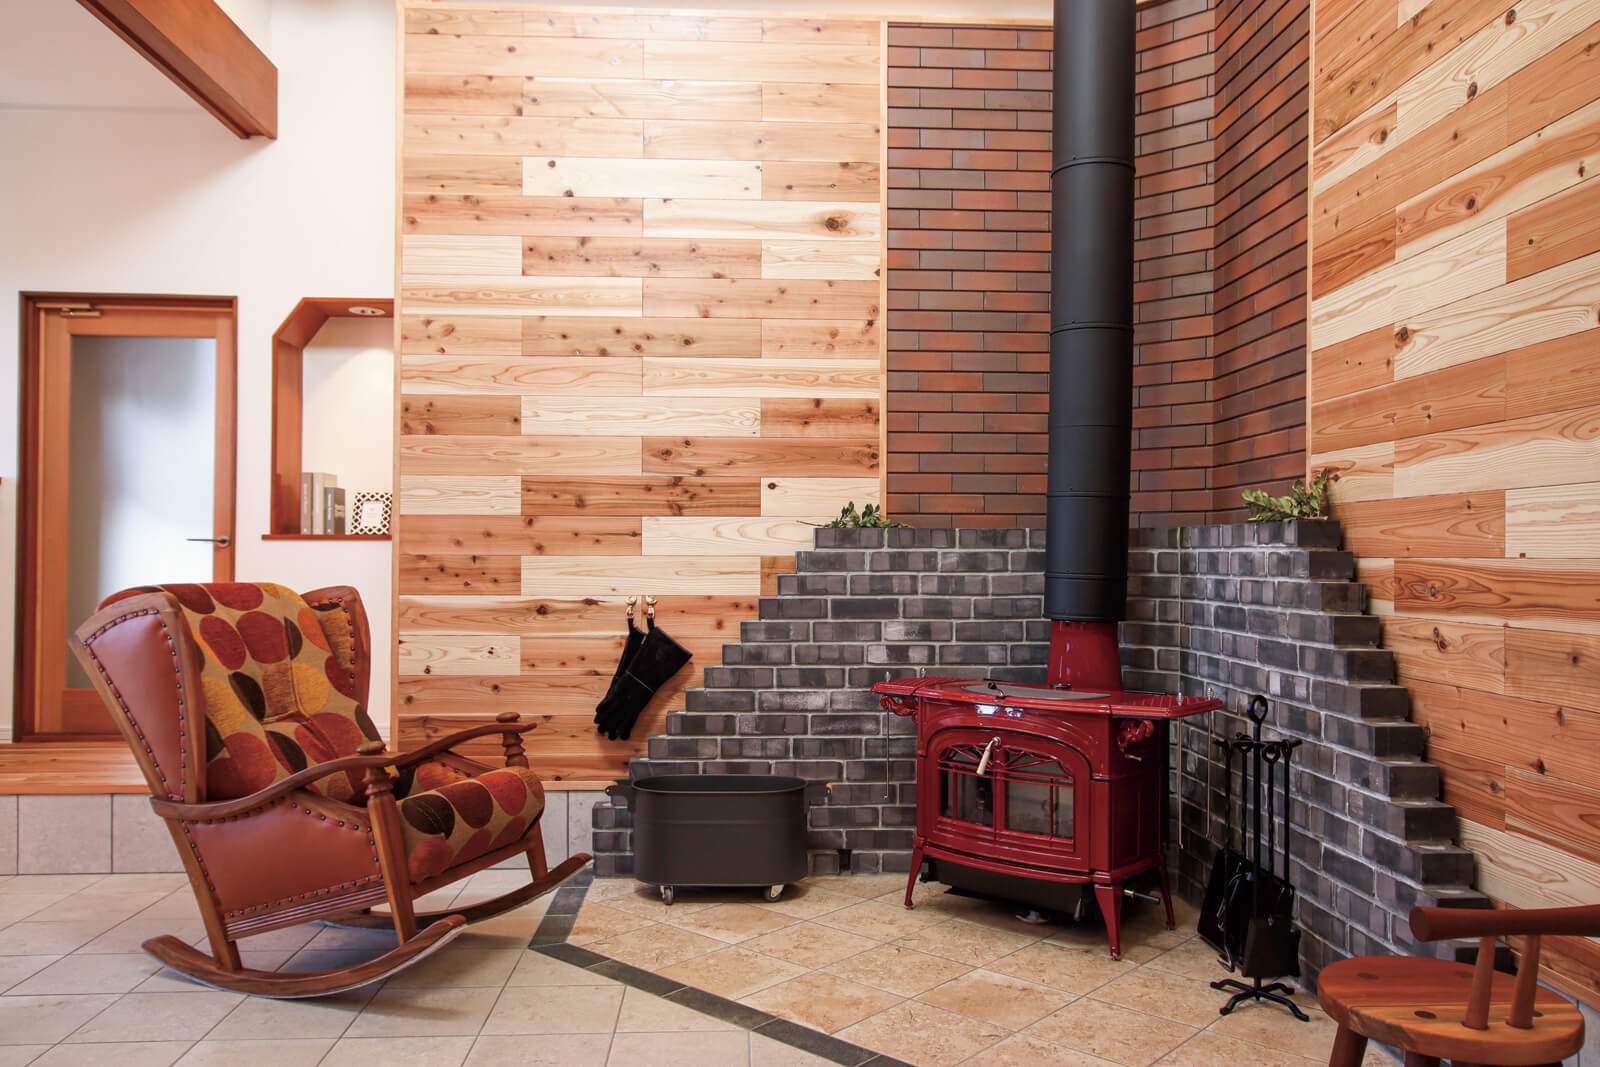 土間空間に設置した薪ストーブ。吹き抜けを通じて家全体を心地よく暖める